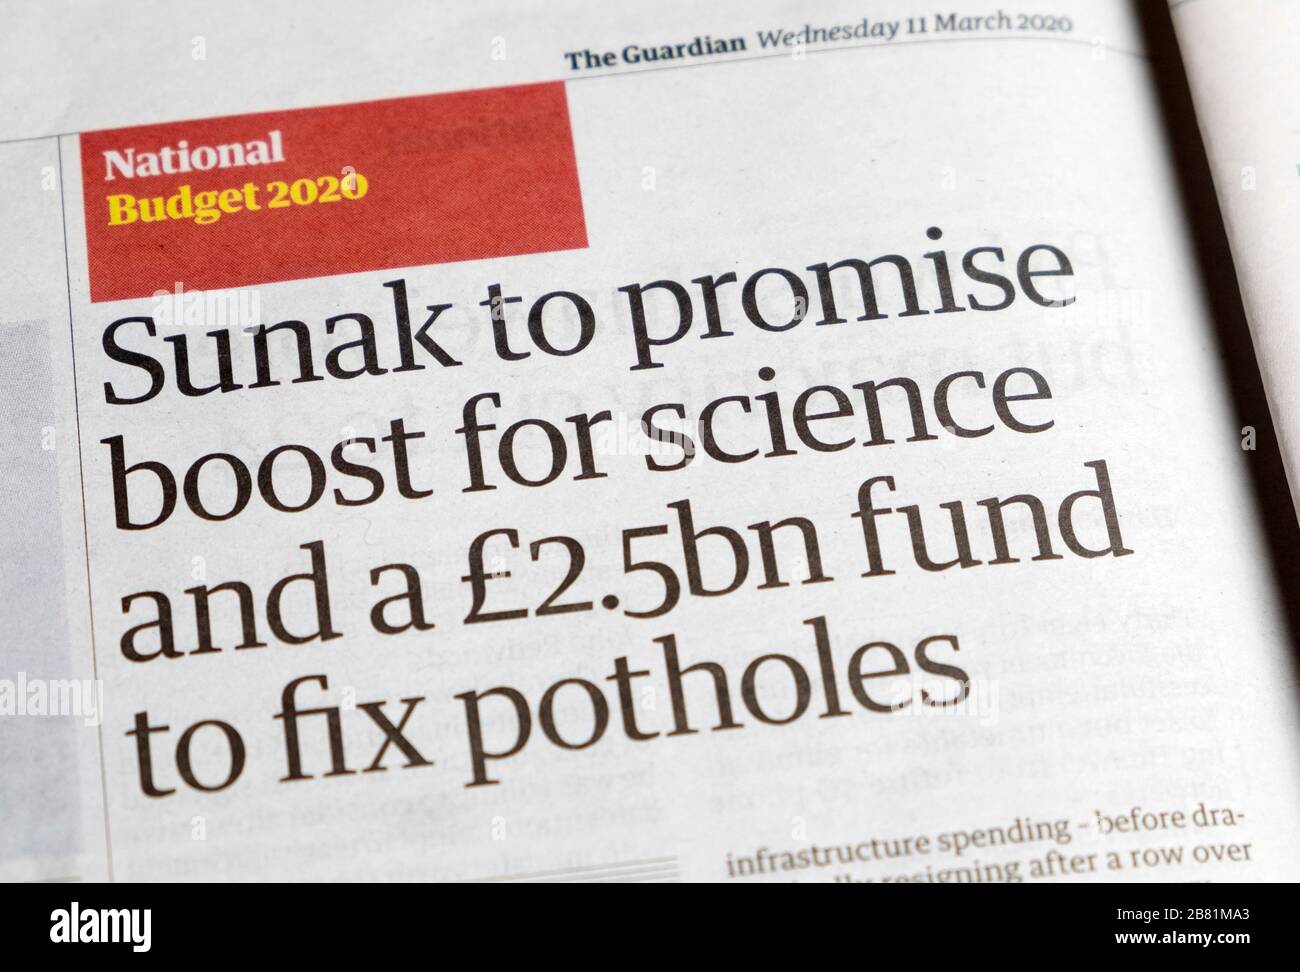 Rishi 'unak promettere spinta per la scienza e un fondo di £2.5bn per fissare i buche' bilancio 2020 sezione finanziaria Guardian giornale 11 marzo Londra Regno Unito Foto Stock